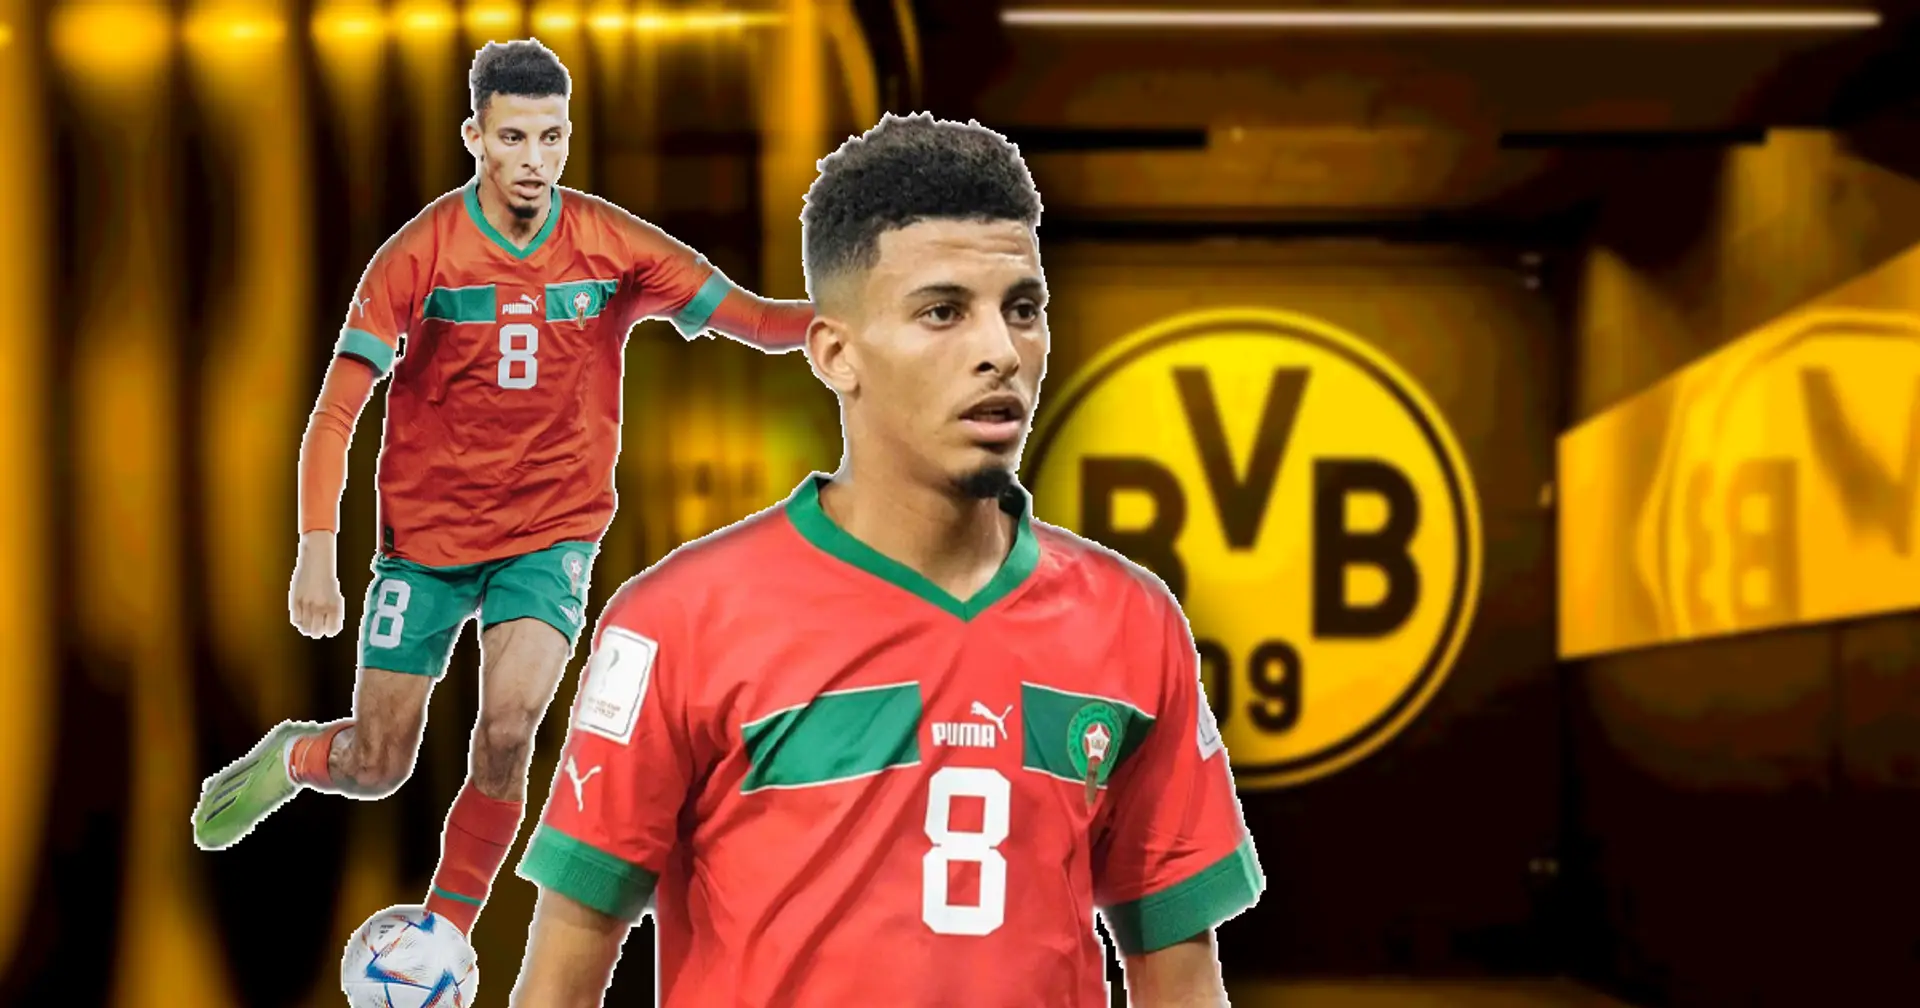 BVB will die Entdeckung dieser WM verpflichten: Marokkanischer Star ist einer der Besten in seinem Team